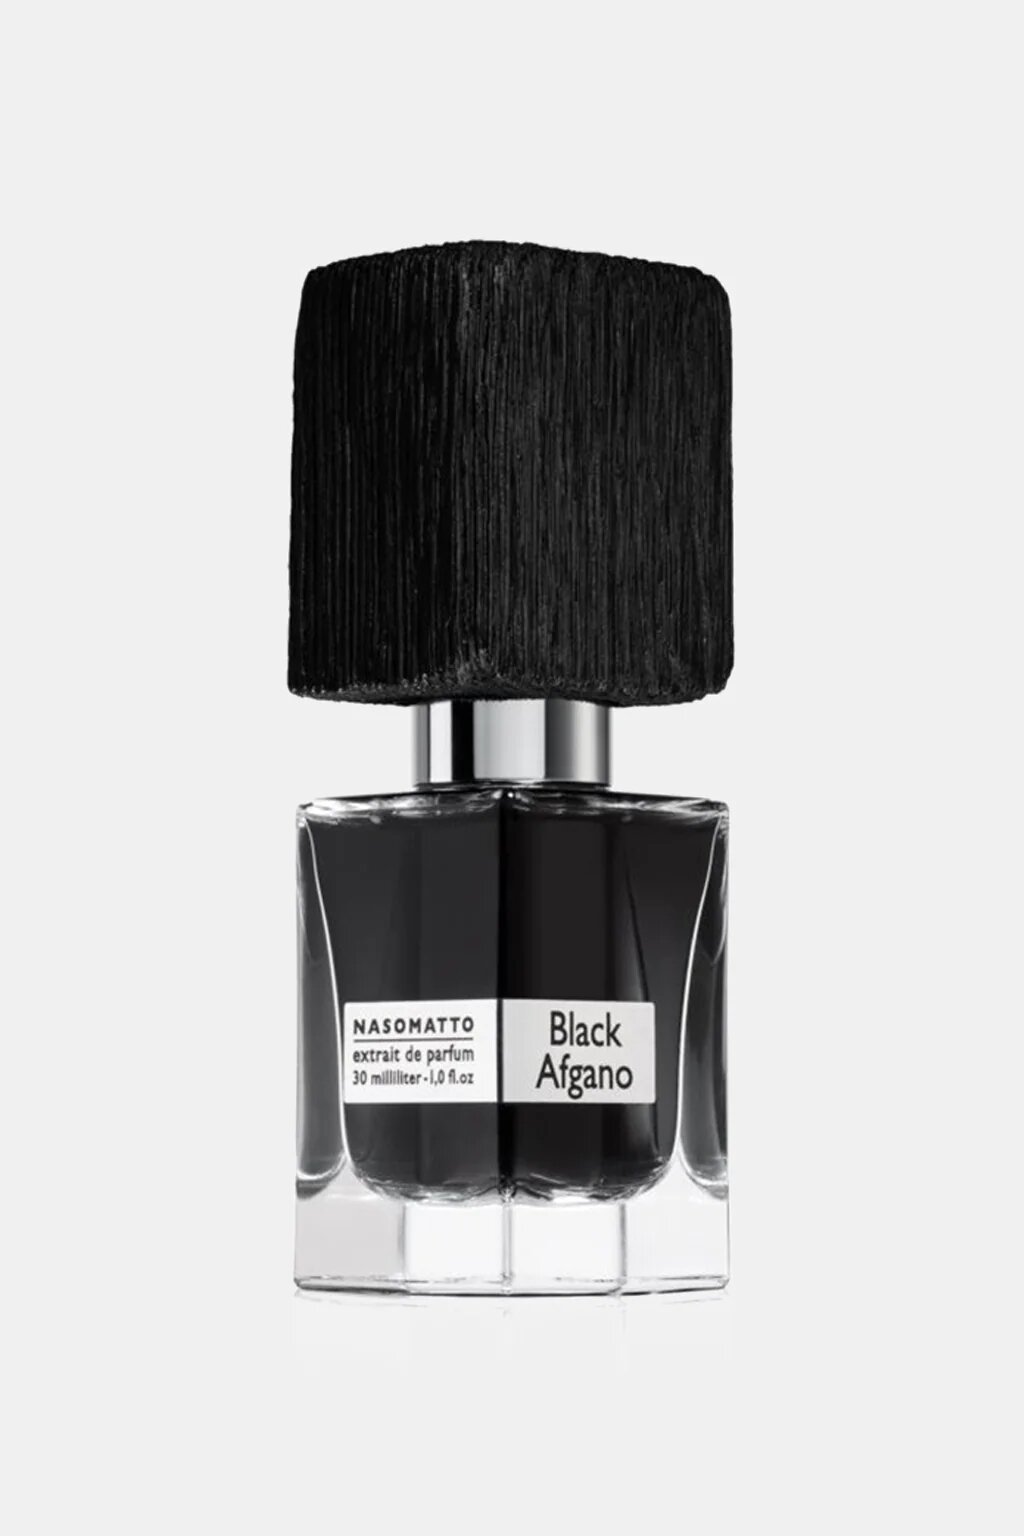 BLACK AFGANO Nasomatto. Concentrated Ultra Premium Perfume Oil 